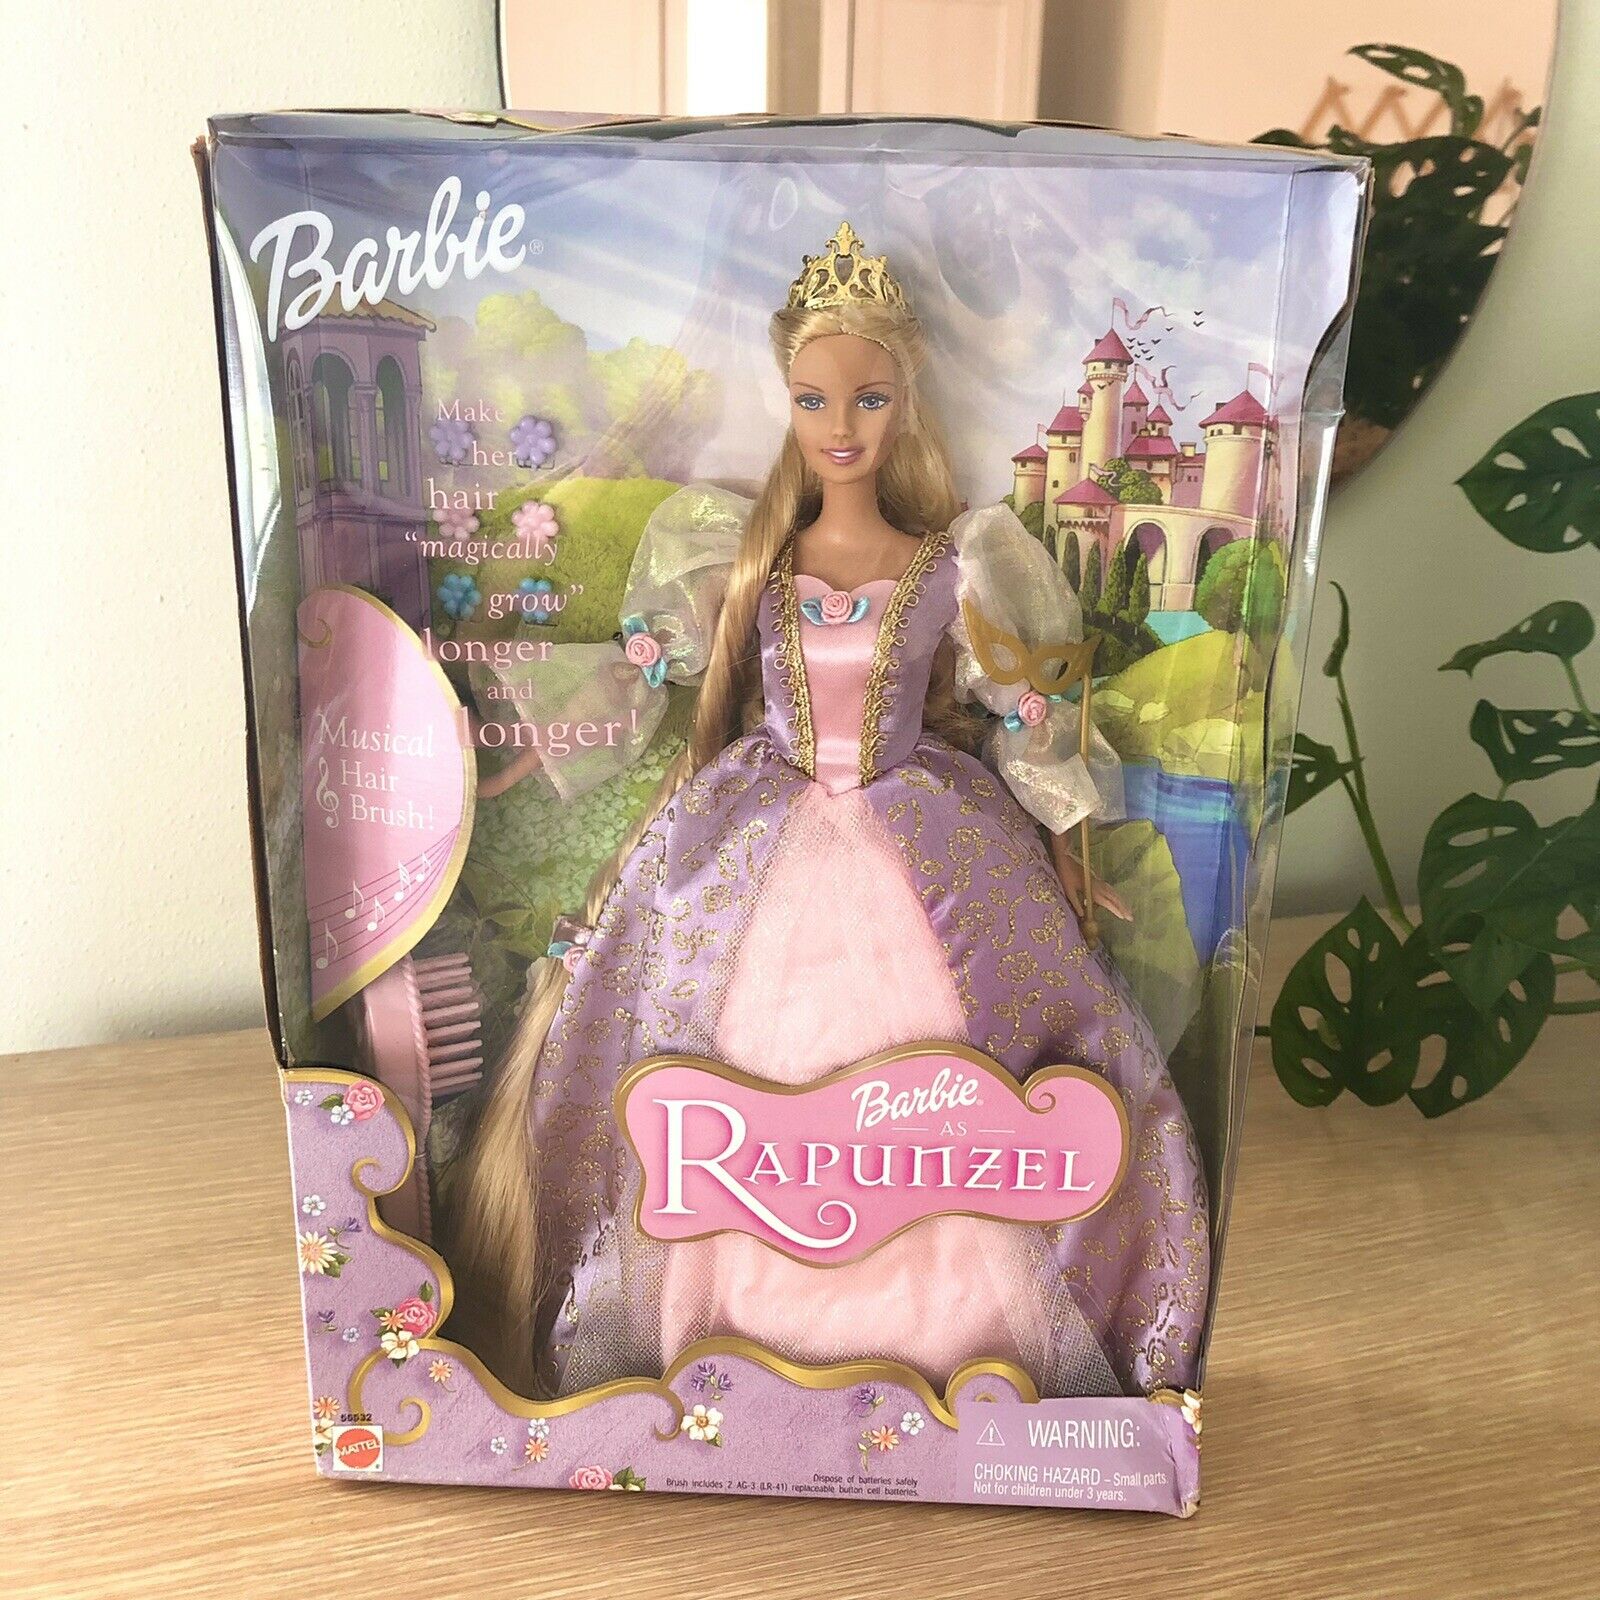 2001 Barbie As Rapunzel Musical Hairbrush Hair Magically Grows Mattel Doll 55532